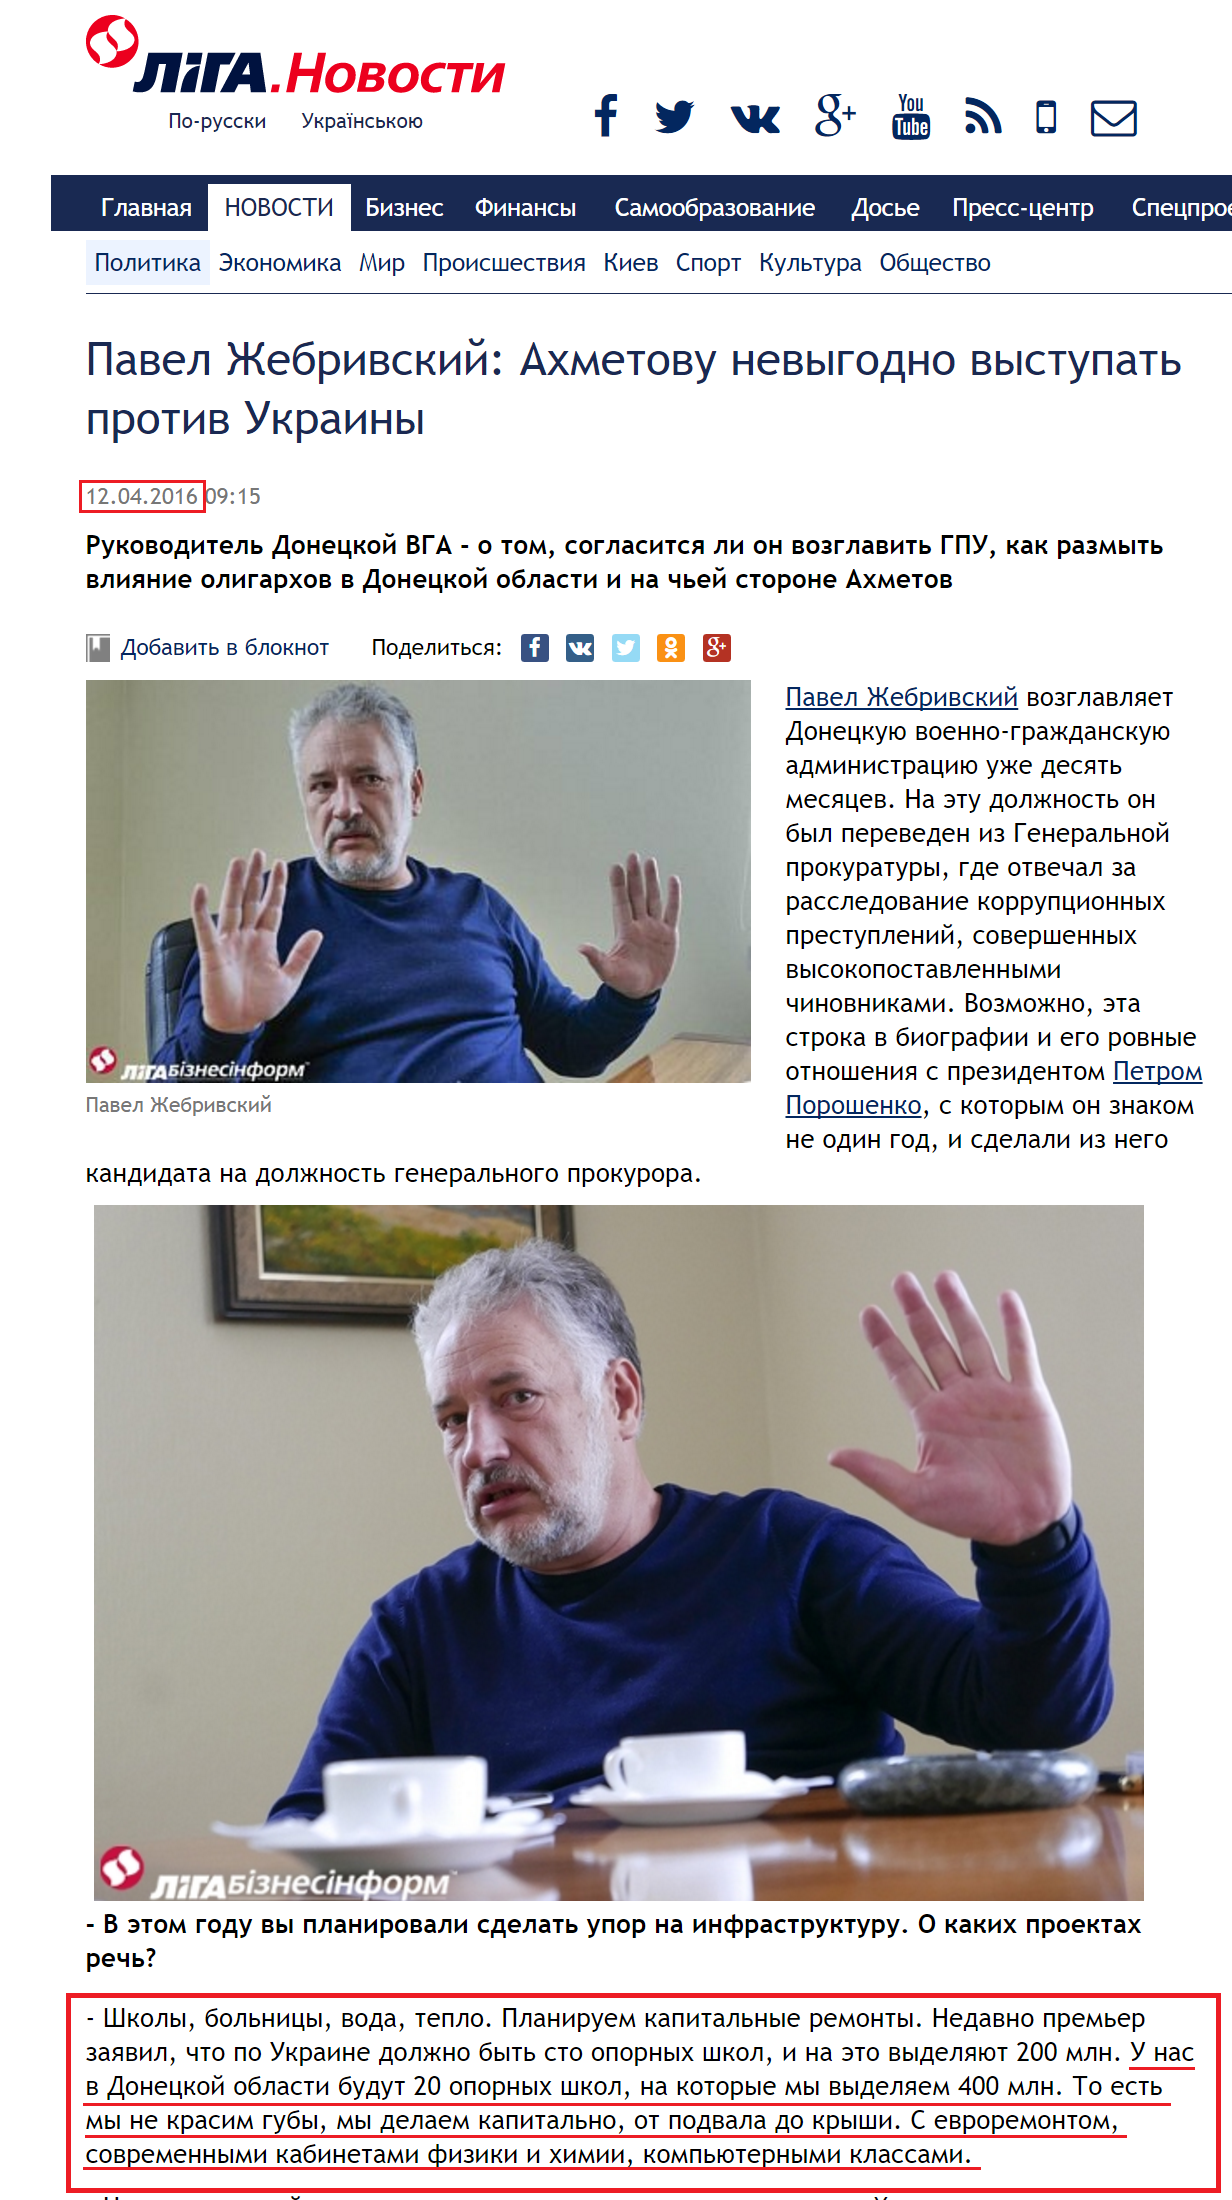 http://news.liga.net/interview/politics/10075212-pavel_zhebrivskiy_akhmetovu_ne_vygodno_vystupat_protiv_ukrainy.htm